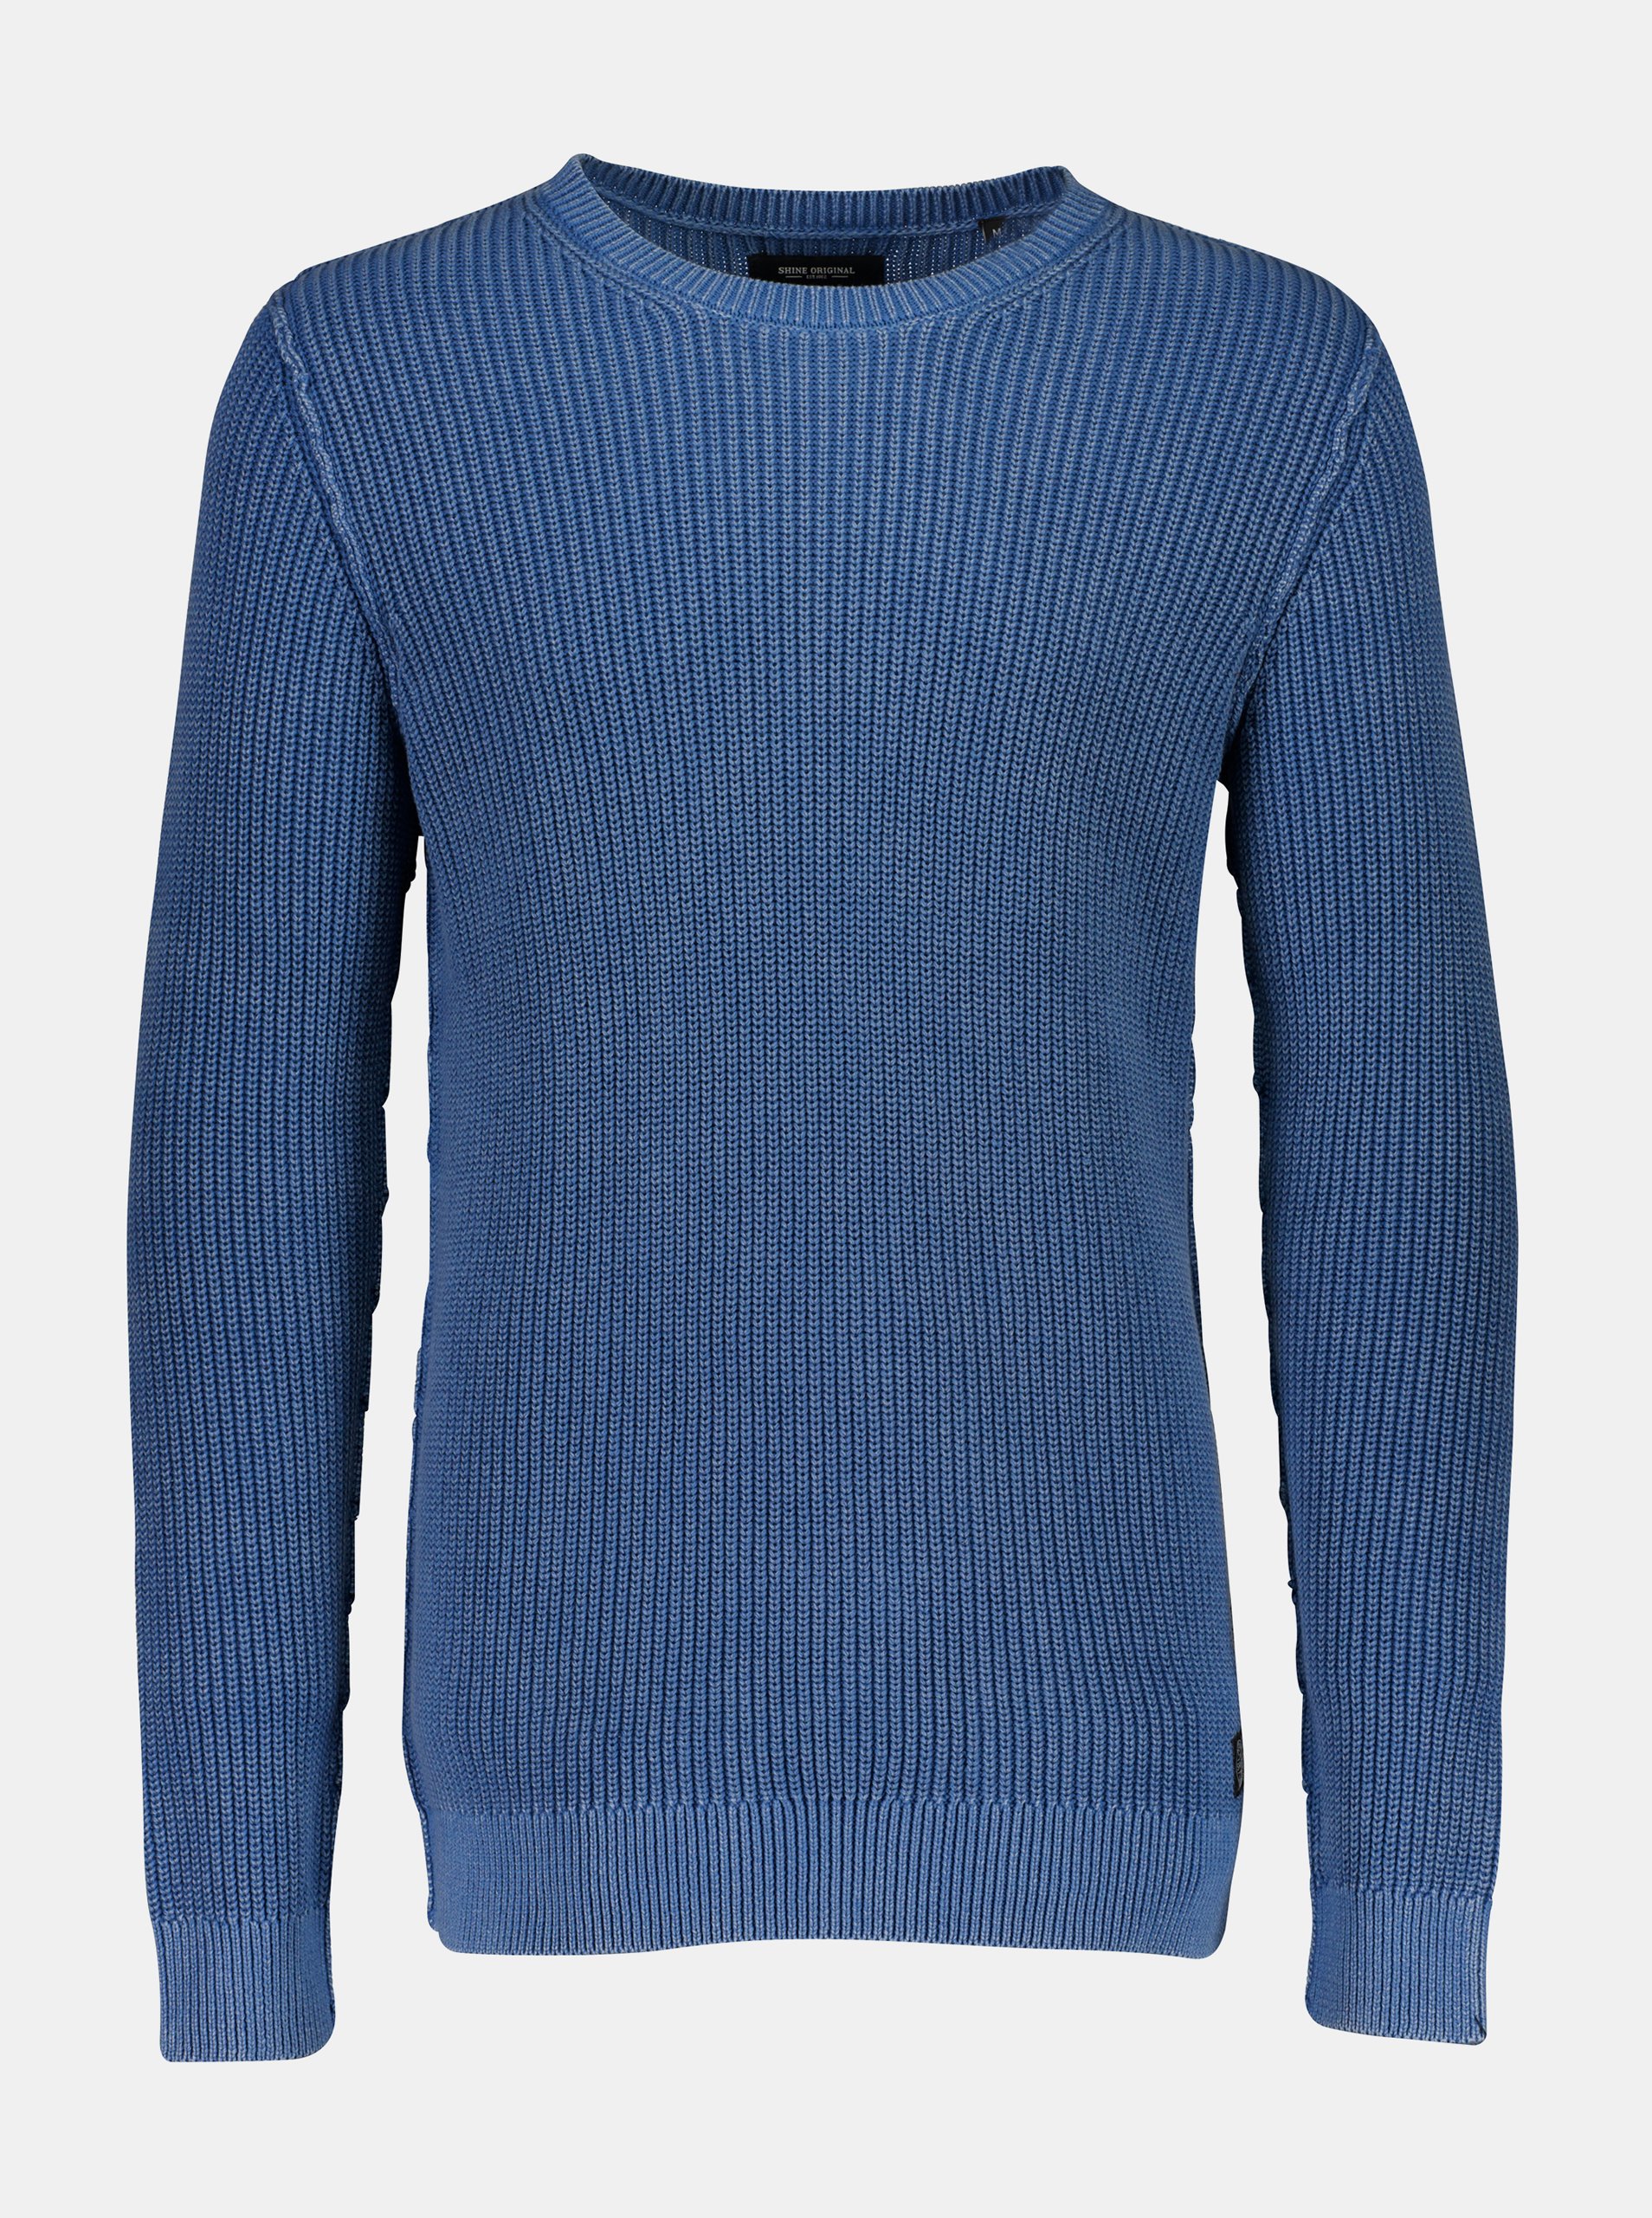 Lacno Modrý sveter Shine Original